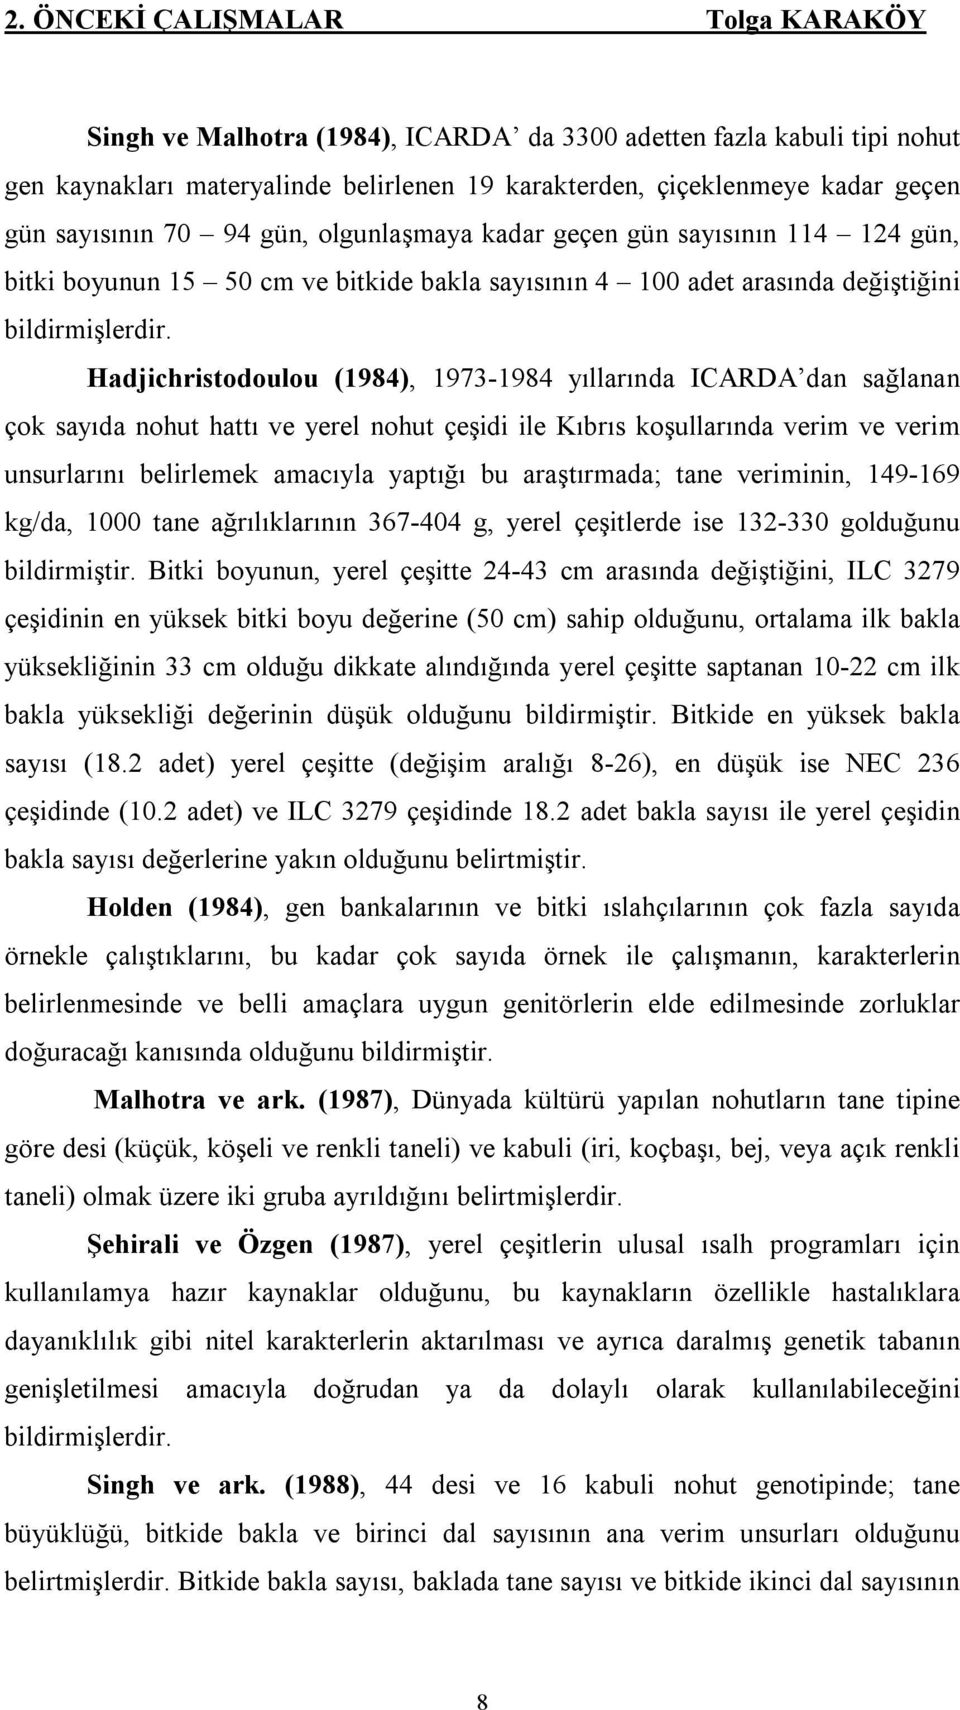 Hadjichristodoulou (1984), 1973-1984 yıllarında ICARDA dan sağlanan çok sayıda nohut hattı ve yerel nohut çeşidi ile Kıbrıs koşullarında verim ve verim unsurlarını belirlemek amacıyla yaptığı bu